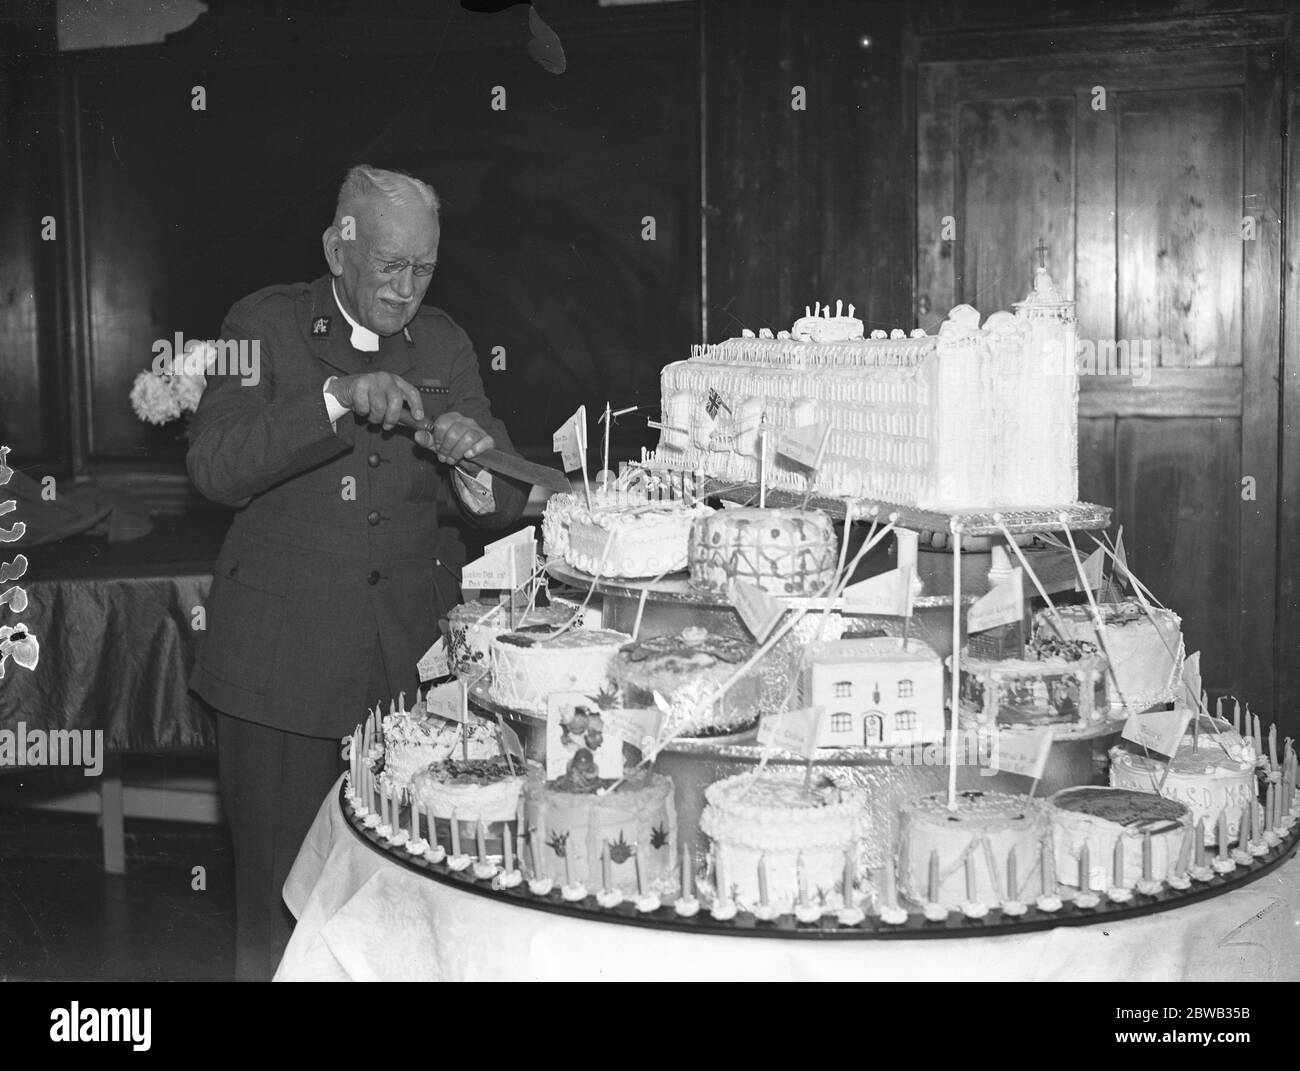 Fondateur de l'Armée de l'Eglise et prébendaire de la Cathédrale Saint Paul , Wilson Carlile coupant son gâteau d'anniversaire lors du déjeuner tenu au quartier général de l'Armée de l'Eglise pour commémorer son 90e anniversaire . 14 janvier 1937 Banque D'Images